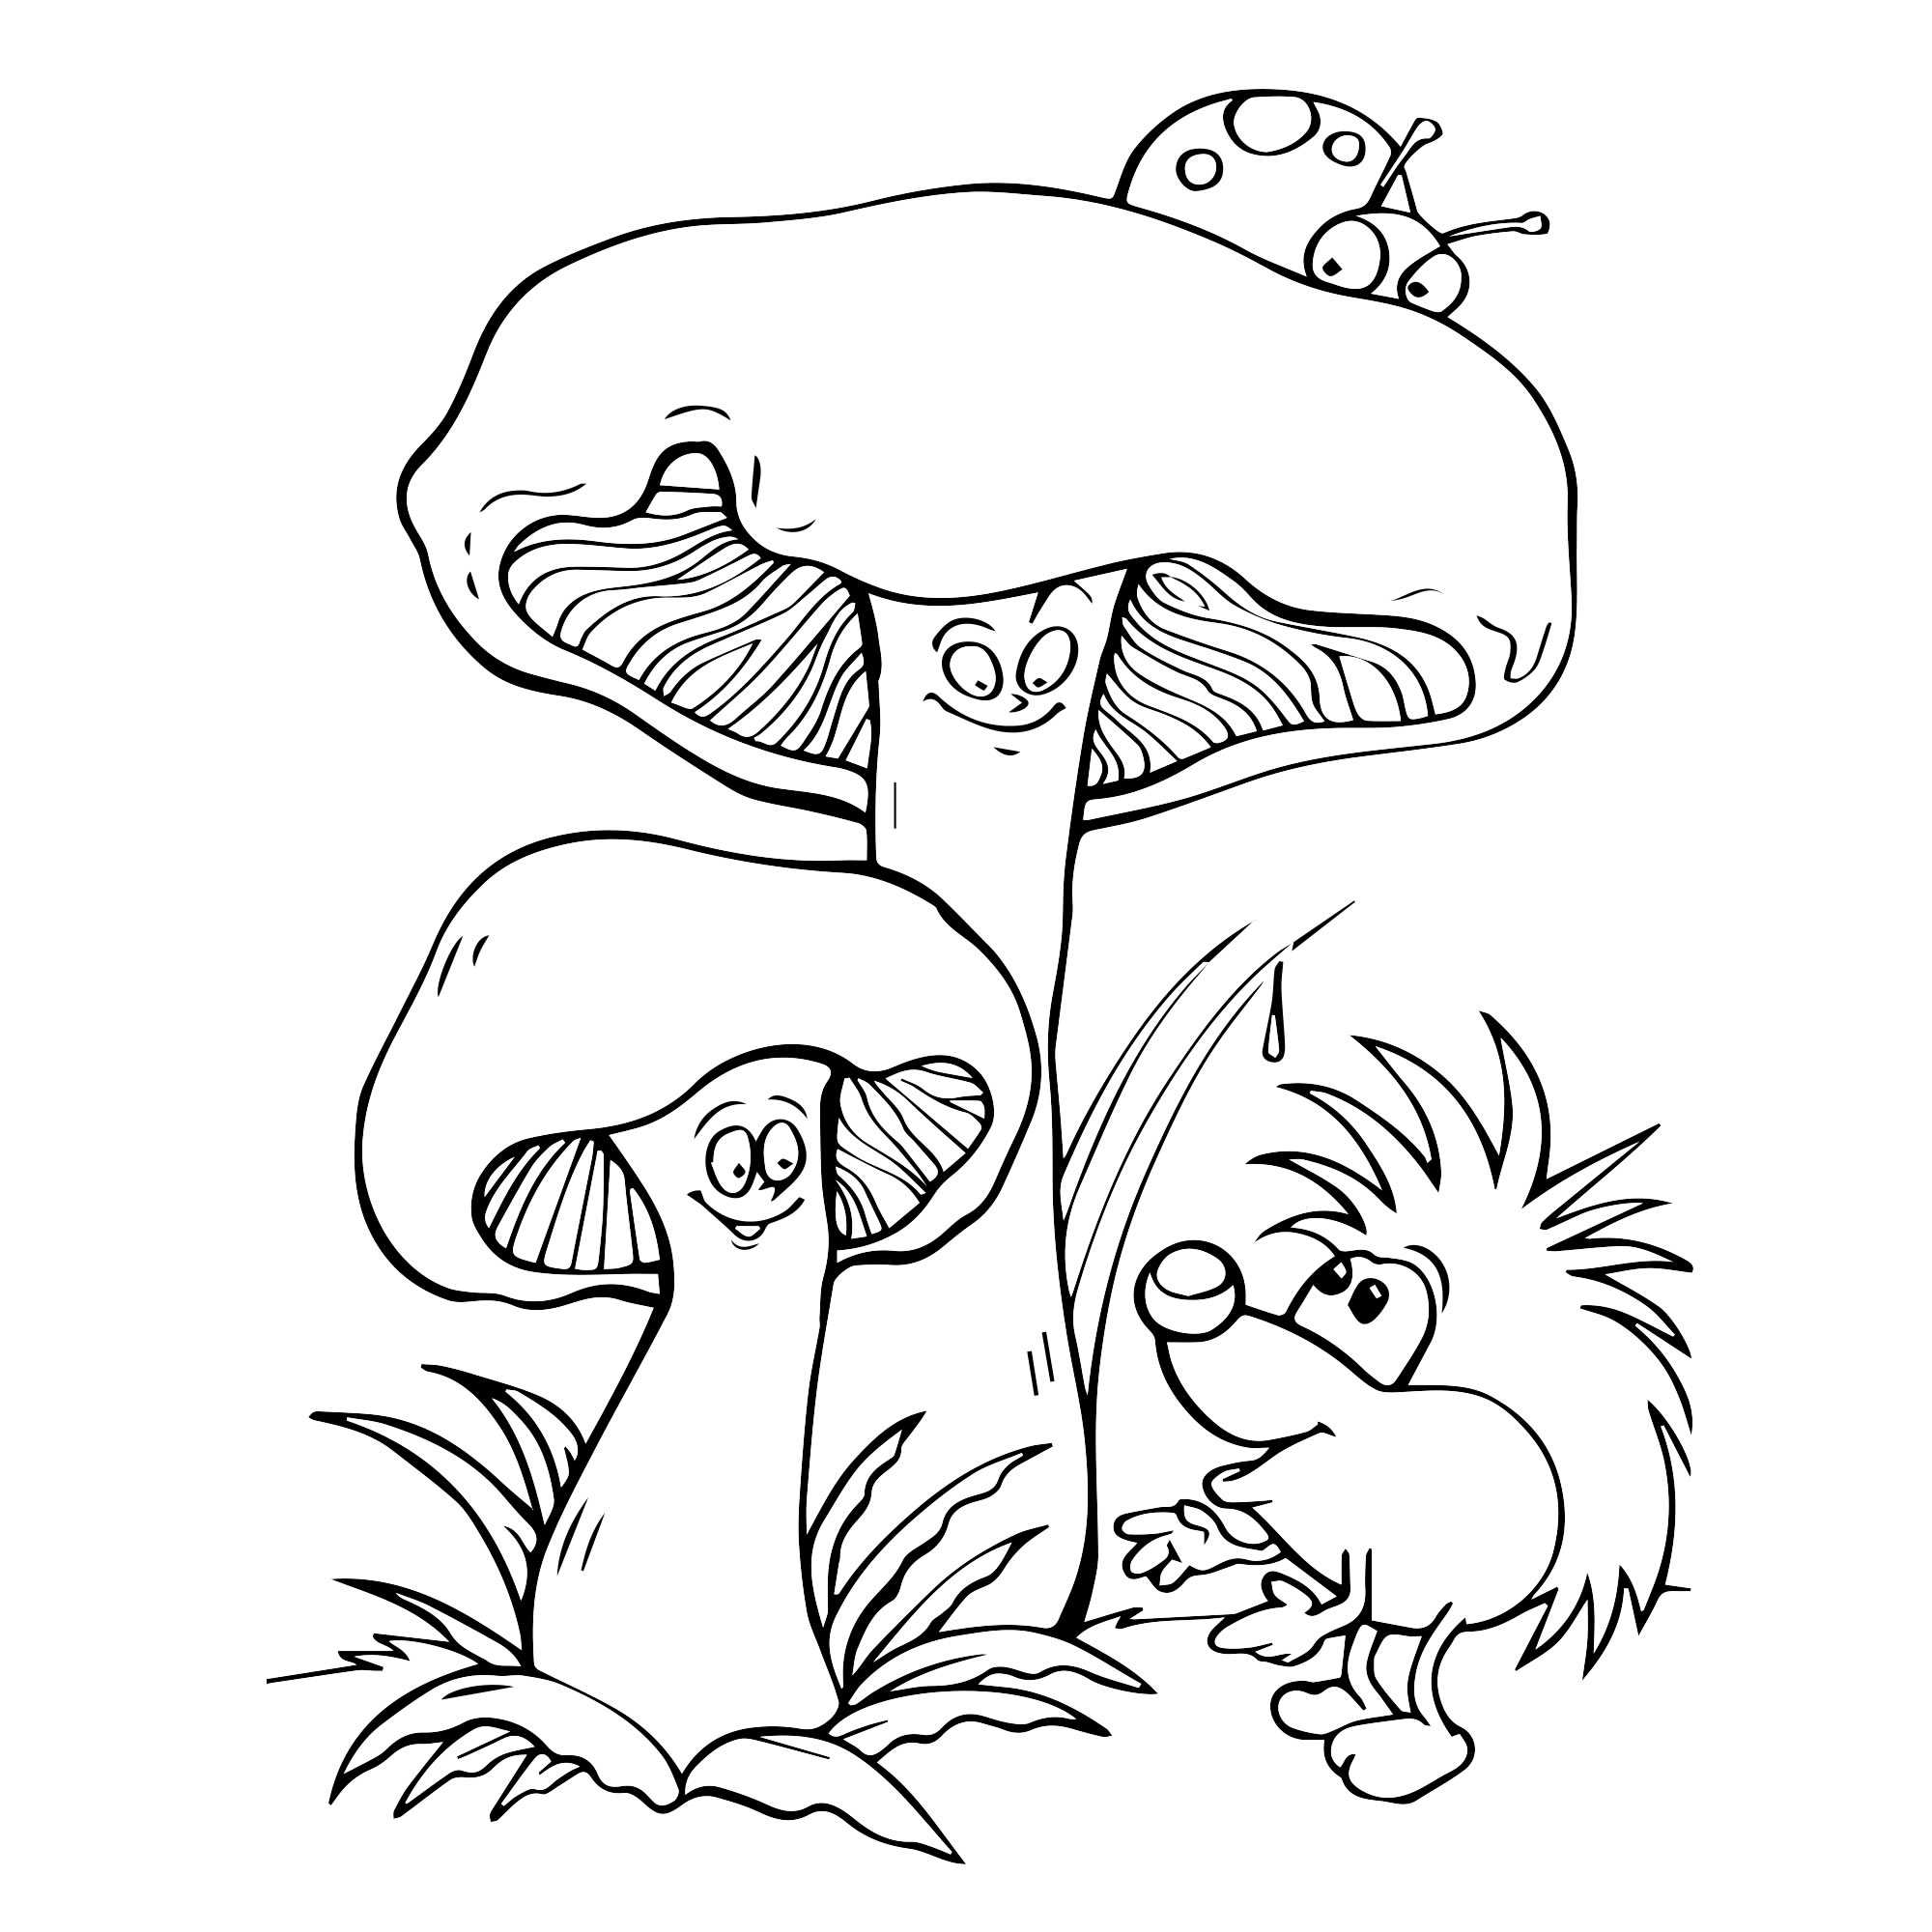 Раскраска грибы (44 картинки для детей). | семейная кучка